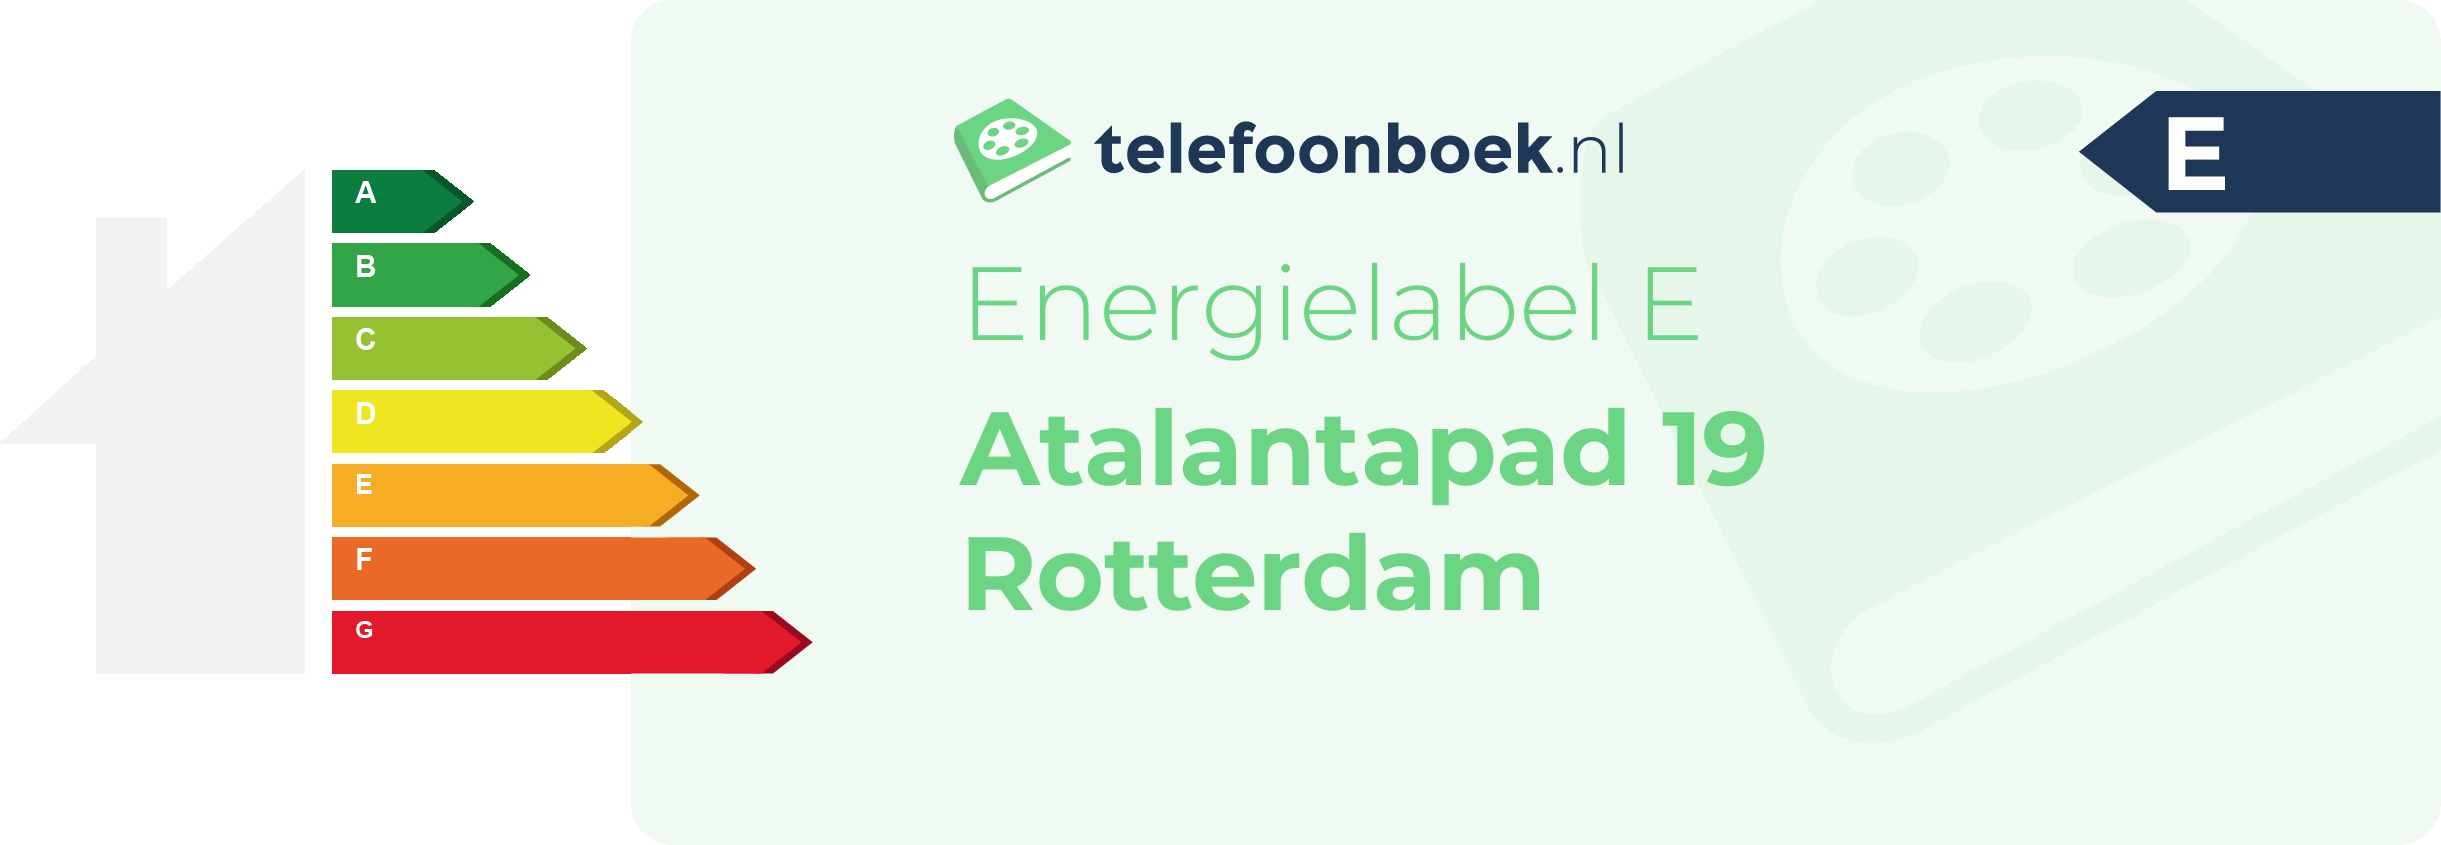 Energielabel Atalantapad 19 Rotterdam